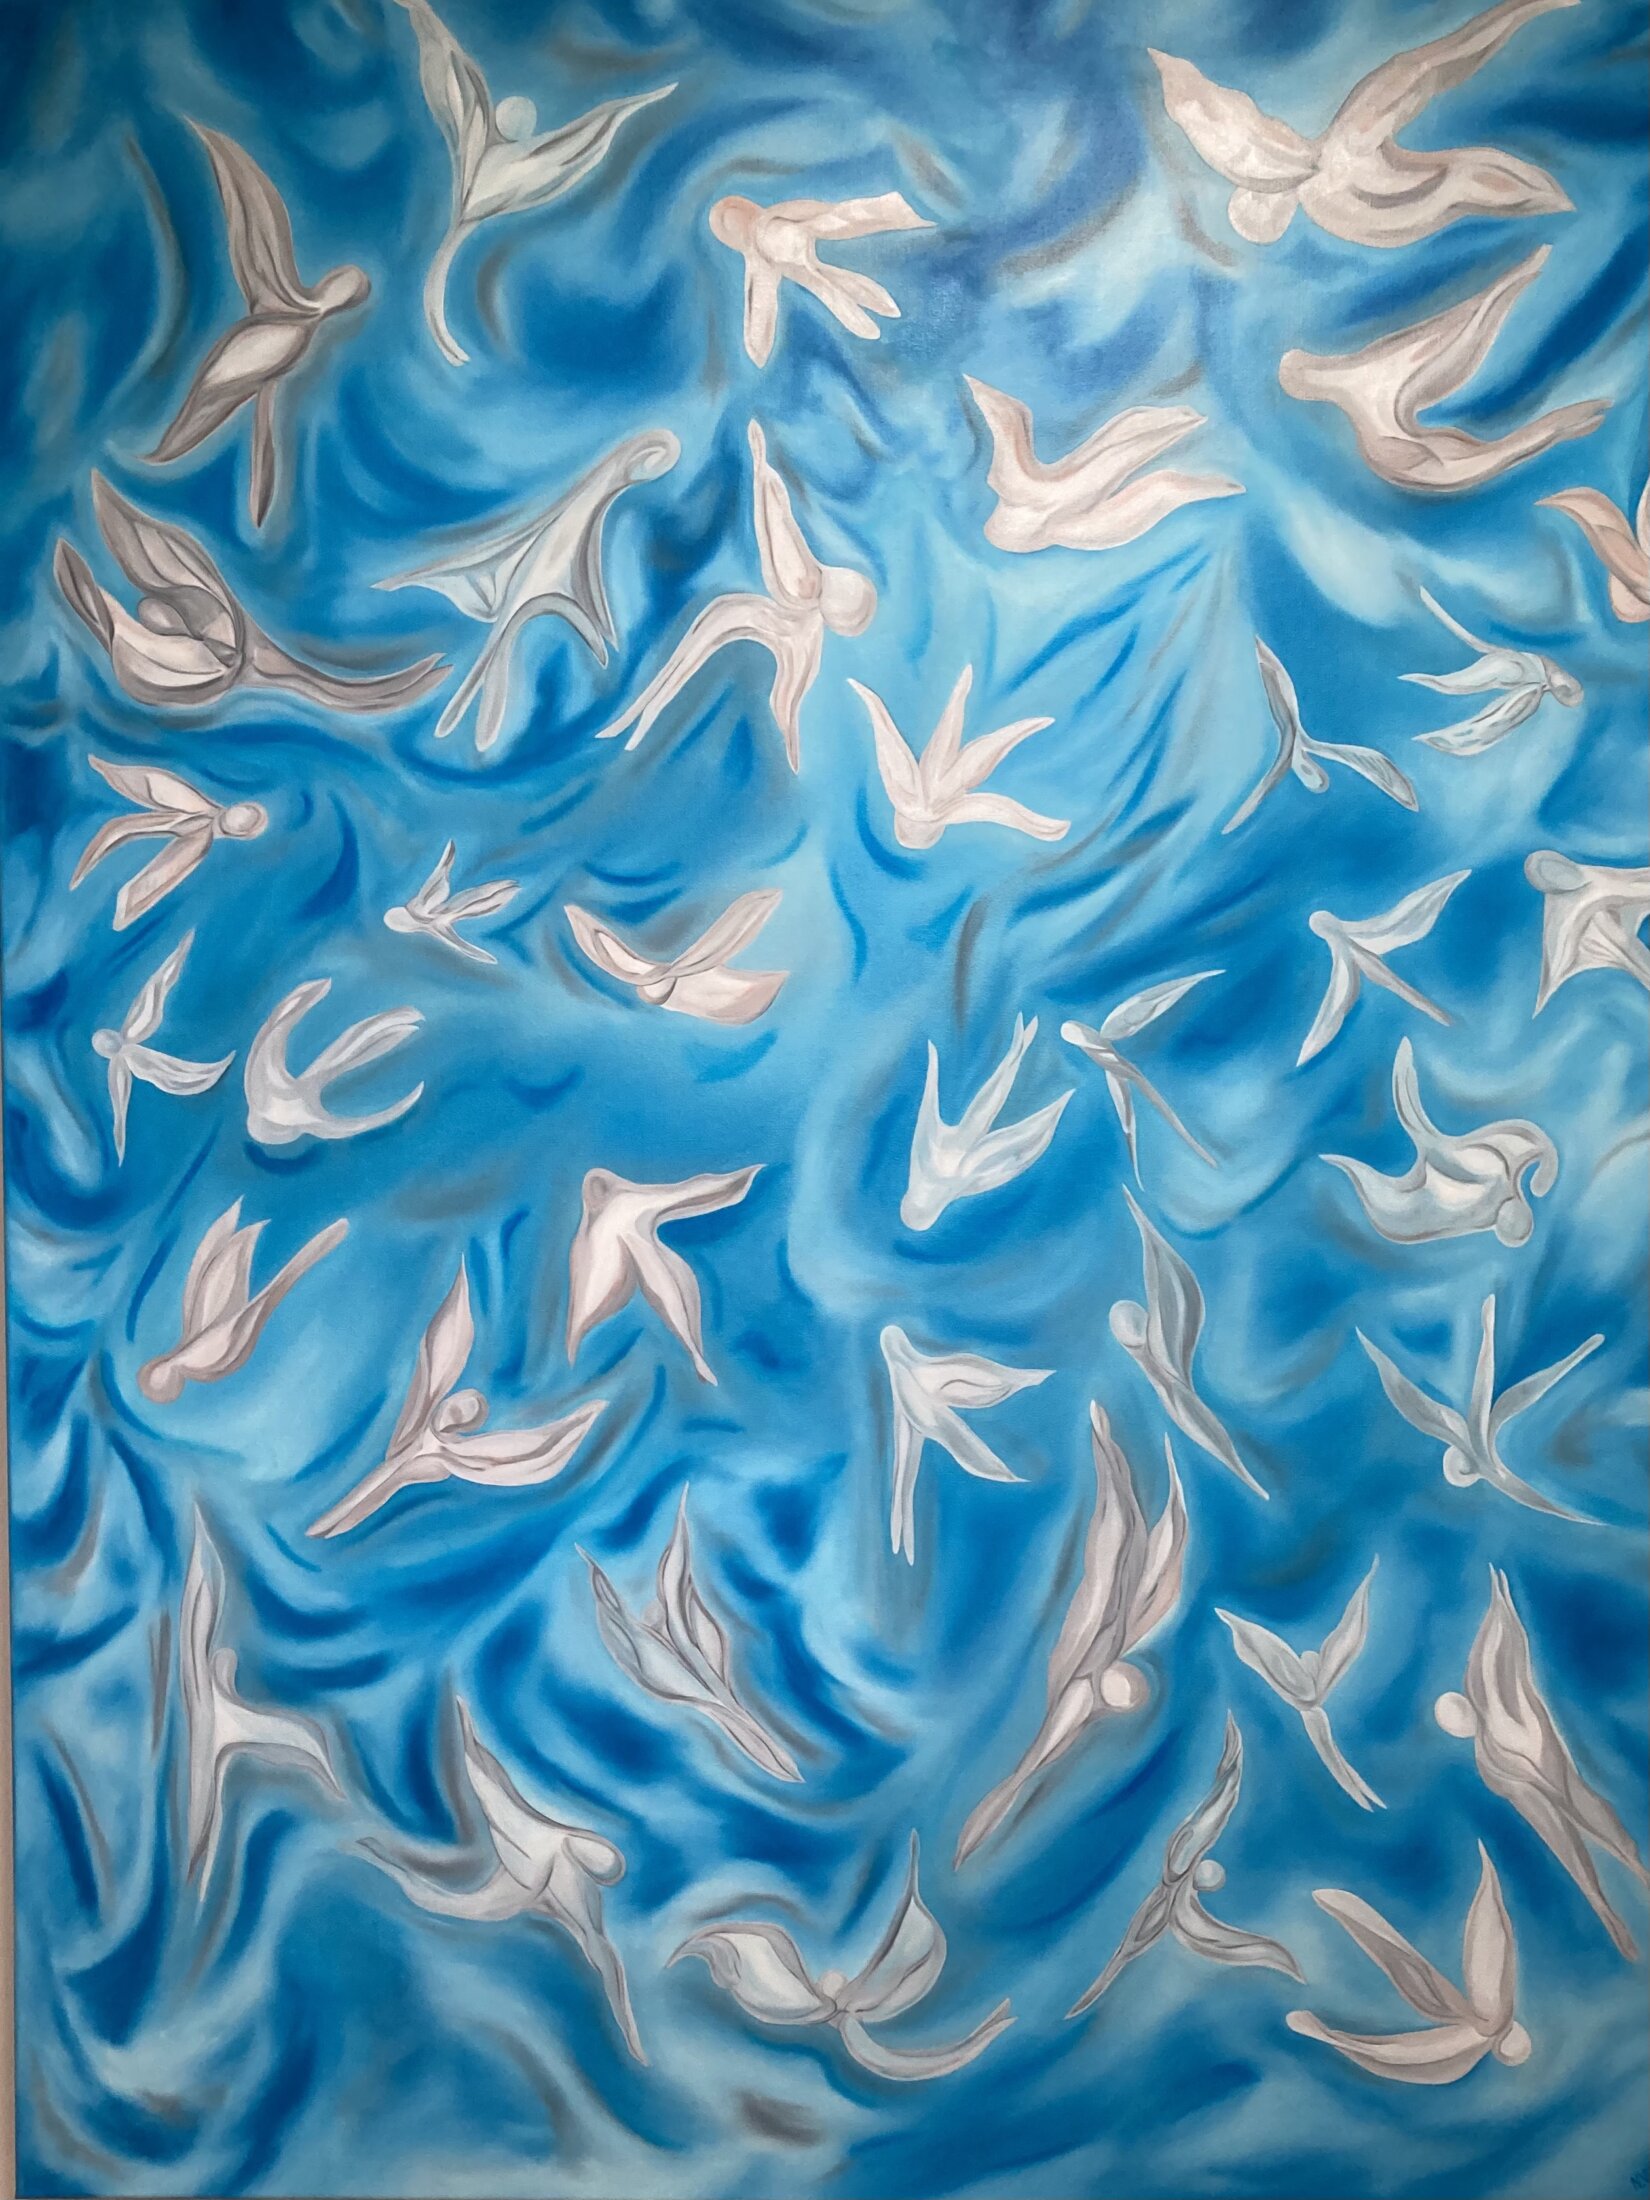 Este cuadro abstracto, obra de la artista Nadia Vuillaume, representa una bandada de ángeles y hadas que juegan en el cielo como niños.